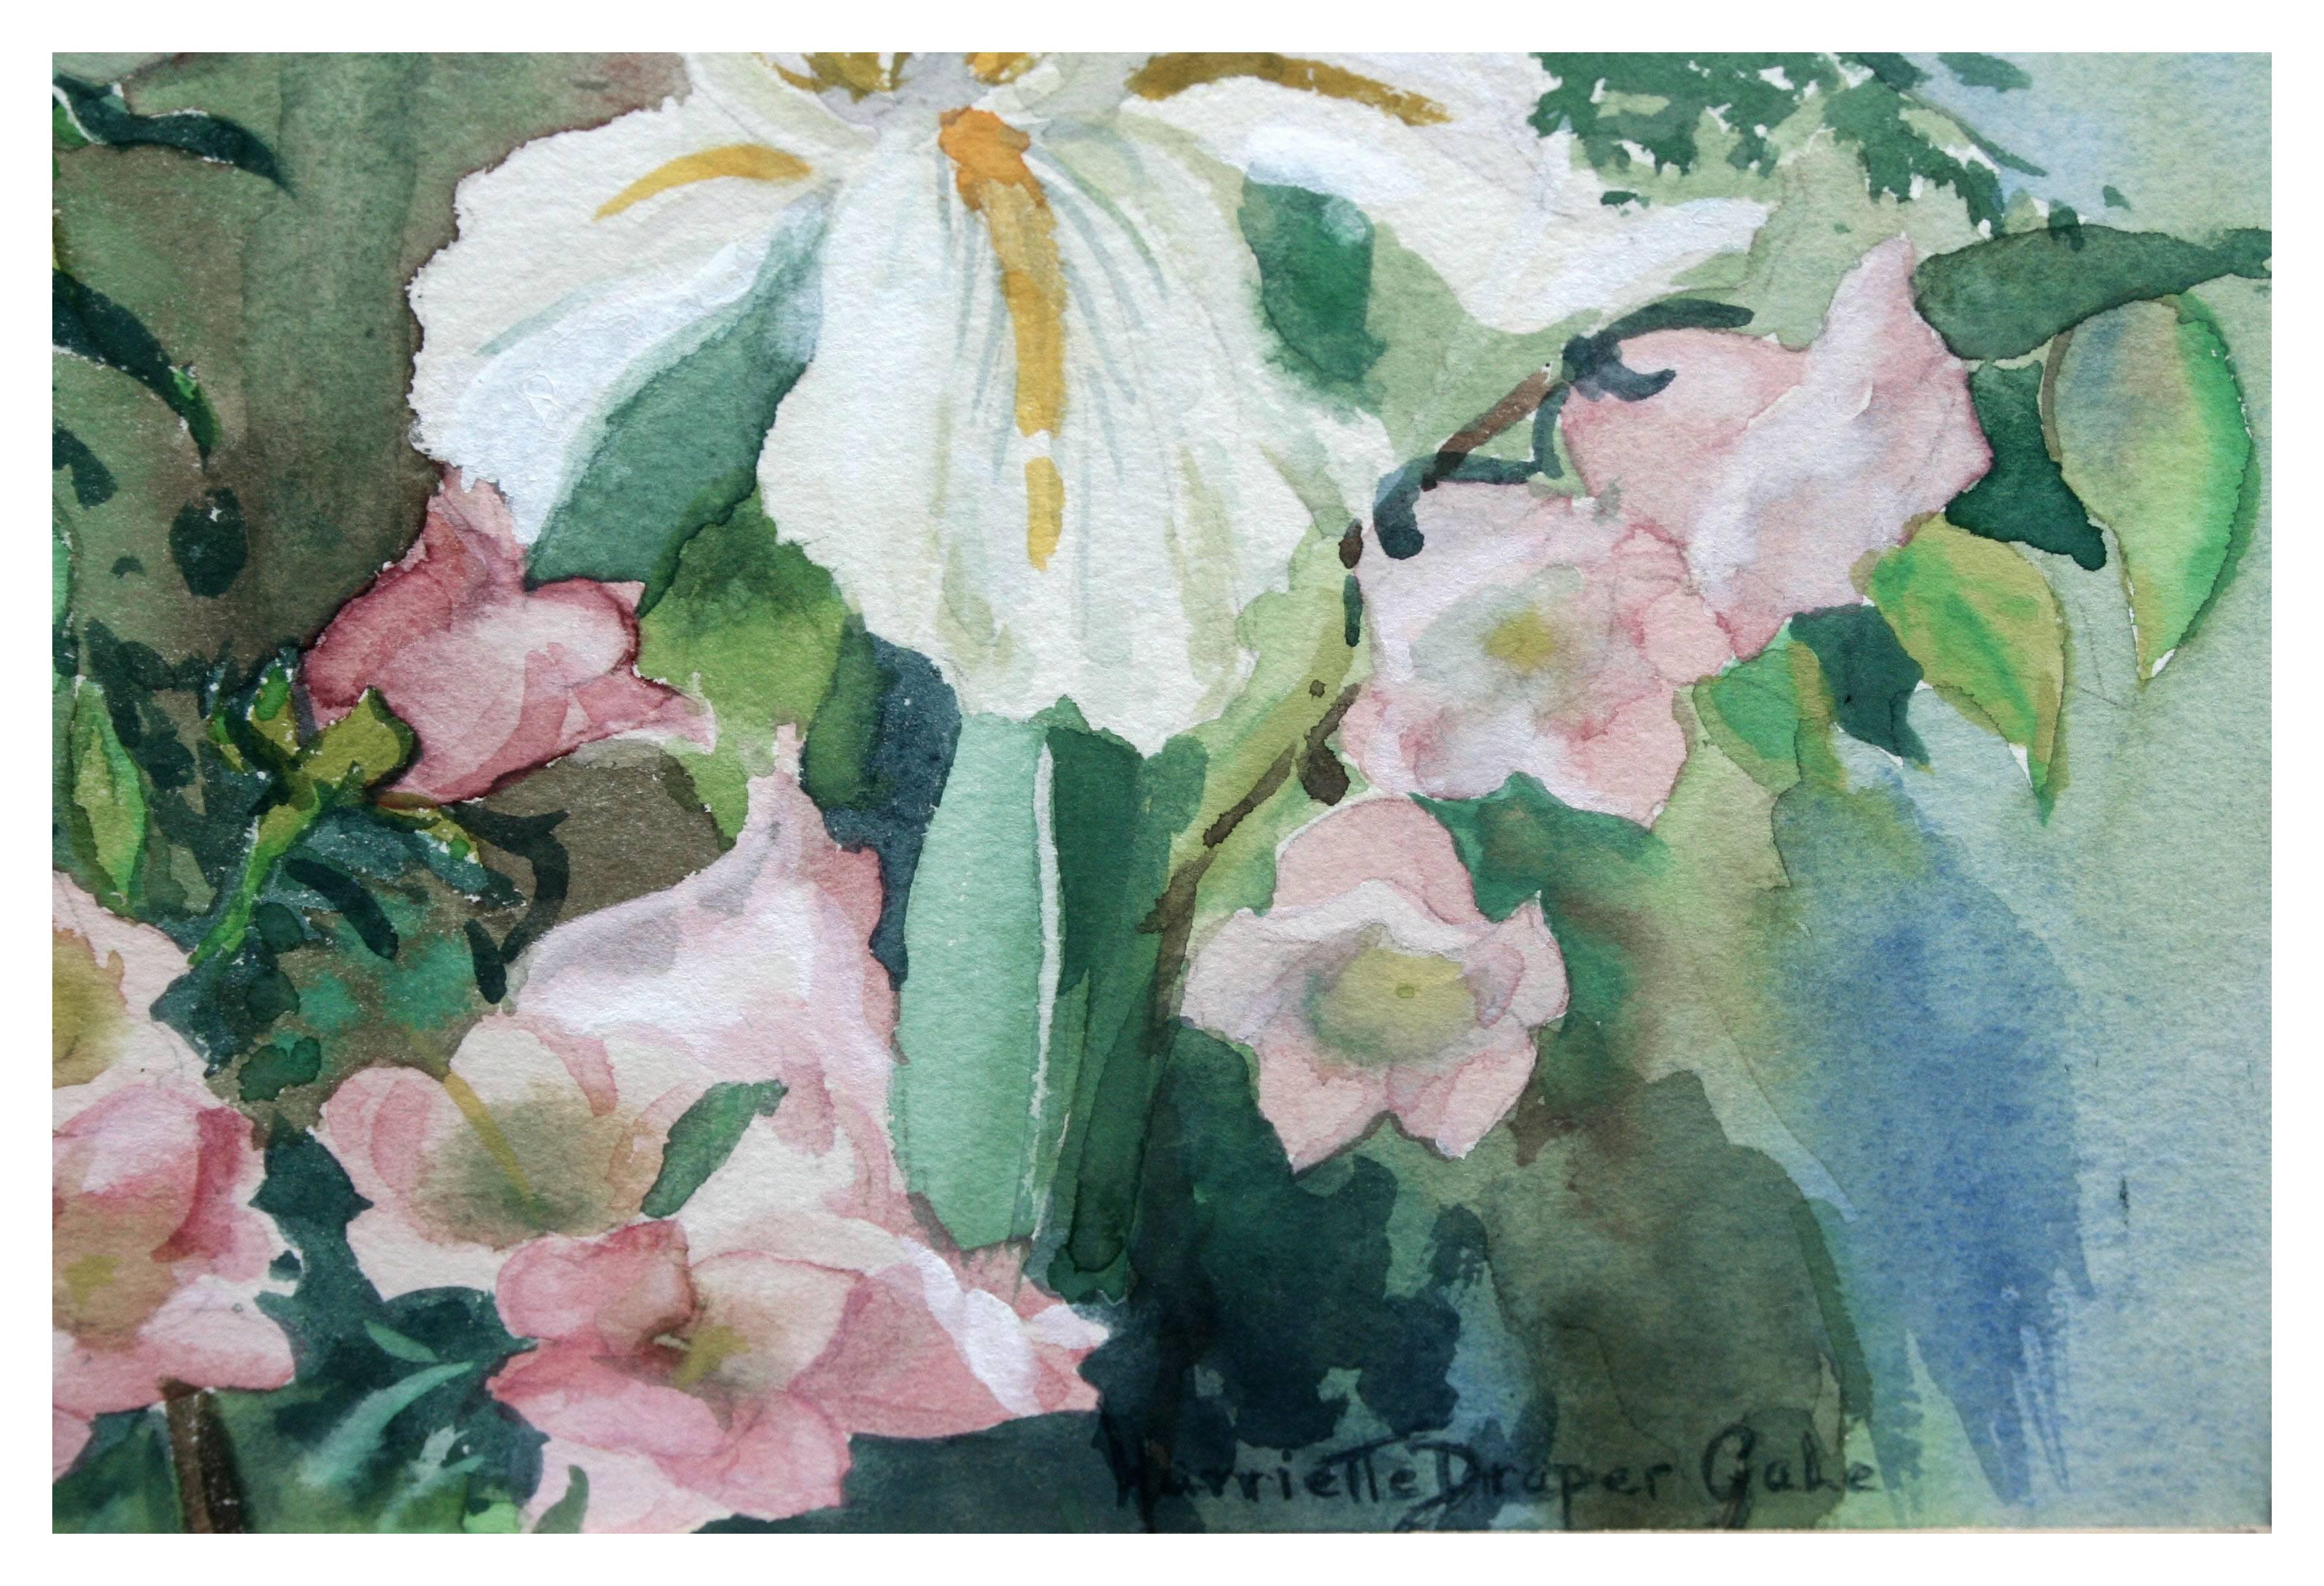 Weißer weißer Iris- und Frühlingsblumenstrauß, geblümtes Stillleben aus der Mitte des Jahrhunderts  (Grau), Still-Life, von Harriette Draper Gale